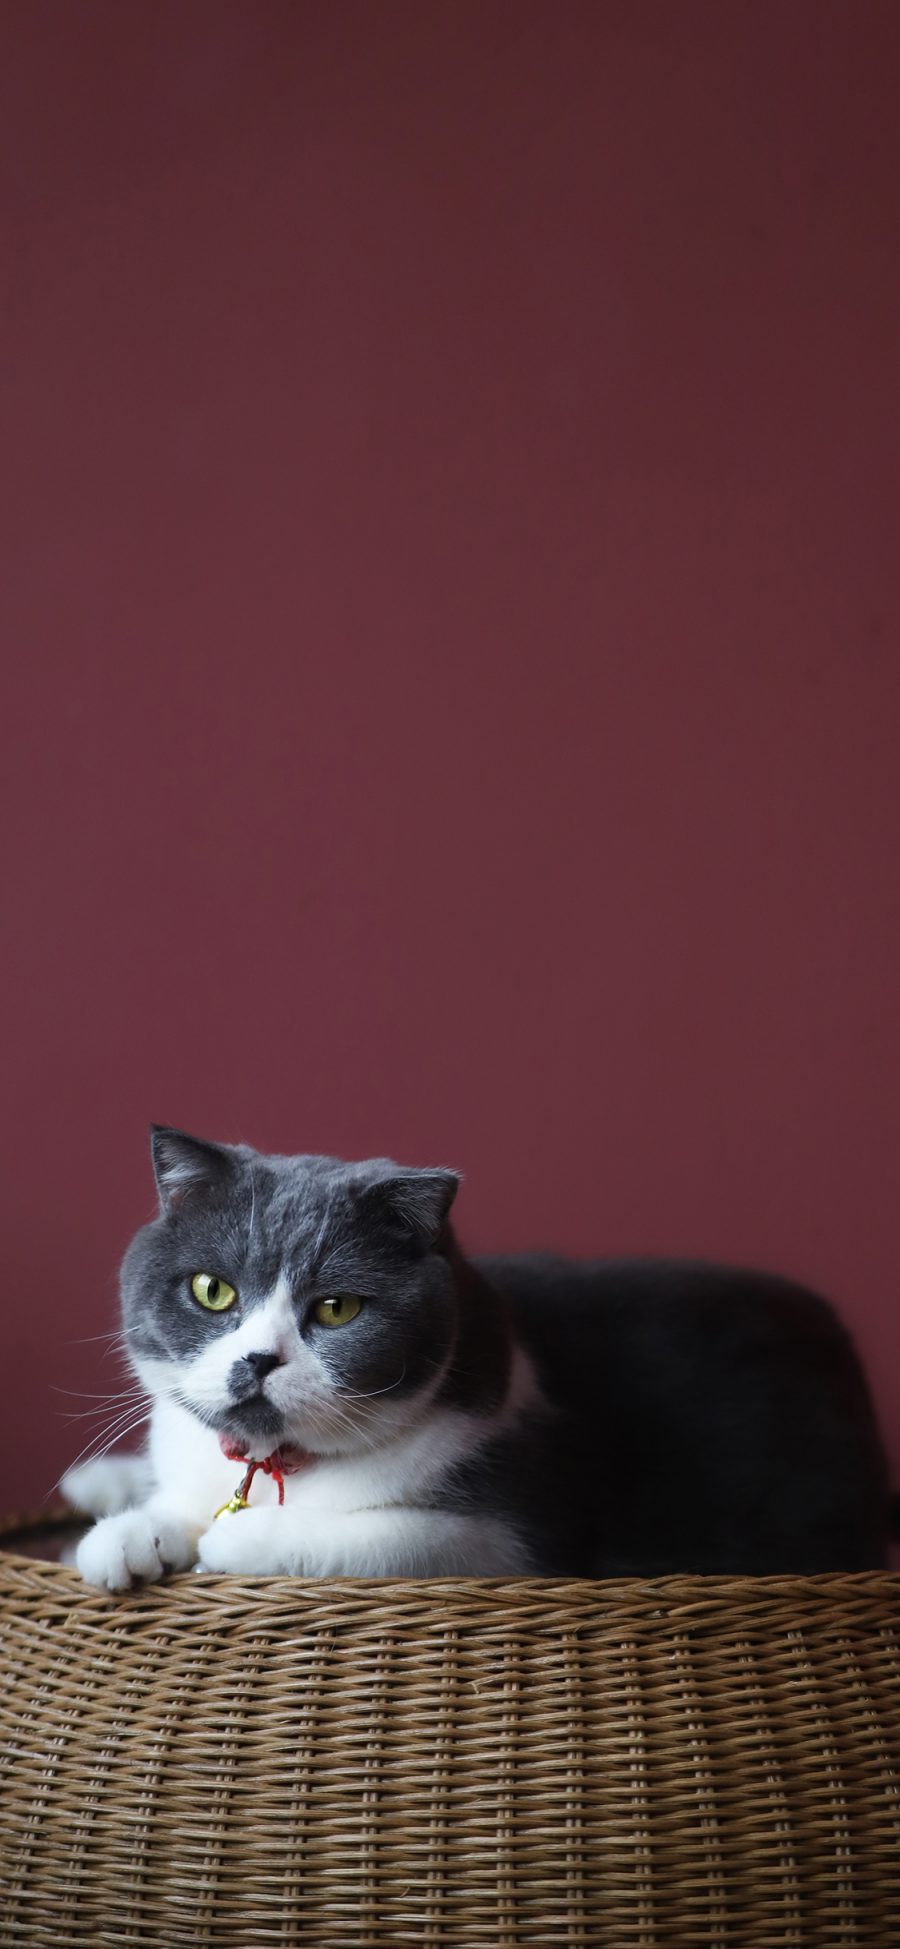 [2436×1125]猫咪 蓝猫 宠物 肥胖 苹果手机壁纸图片